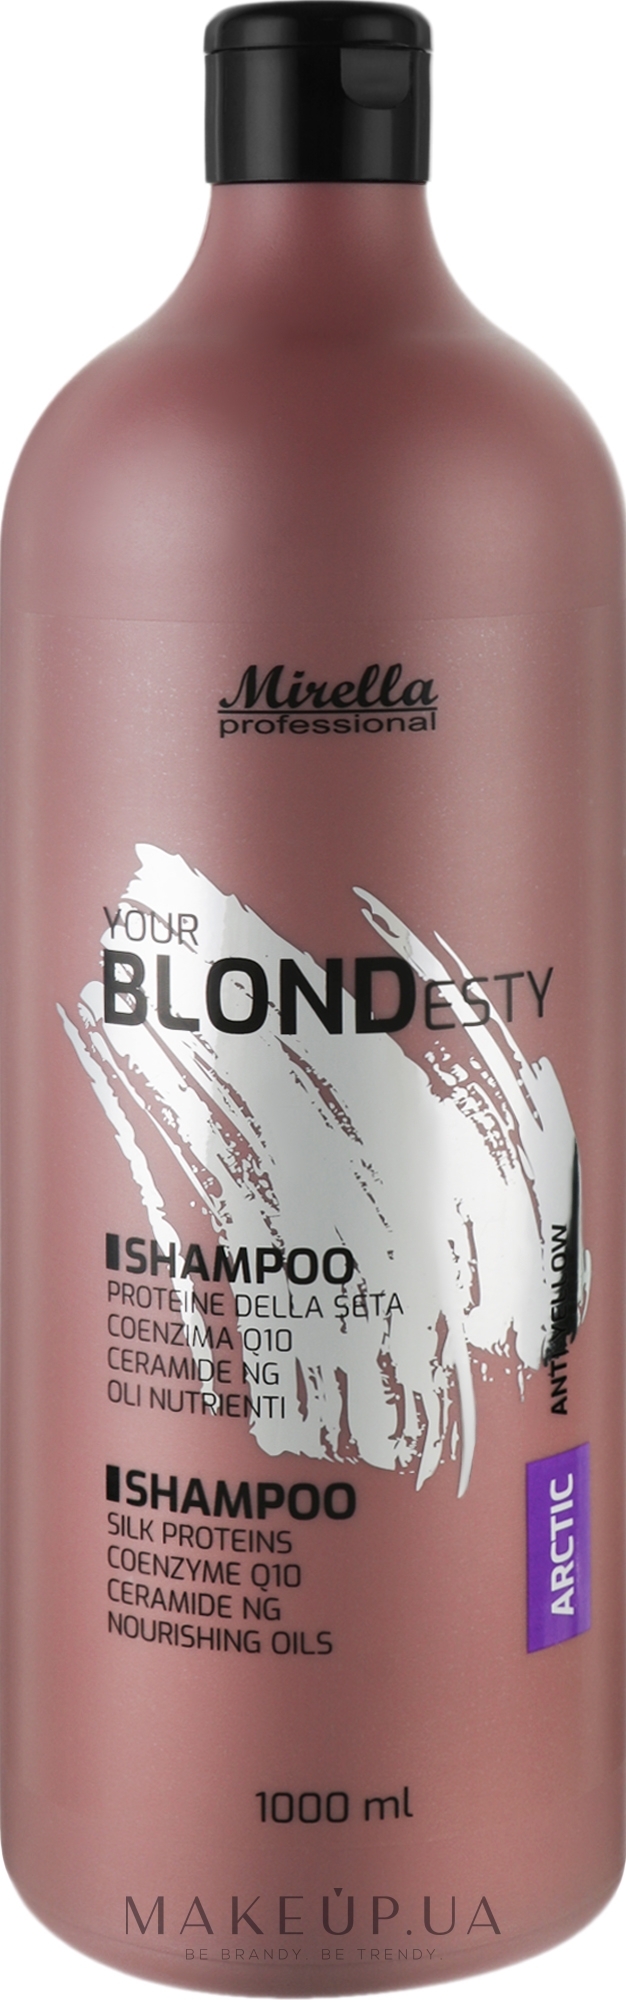 Шампунь для арктических оттенков блонд - Mirella Arctic Your Blondesty Shampoo — фото 1000ml